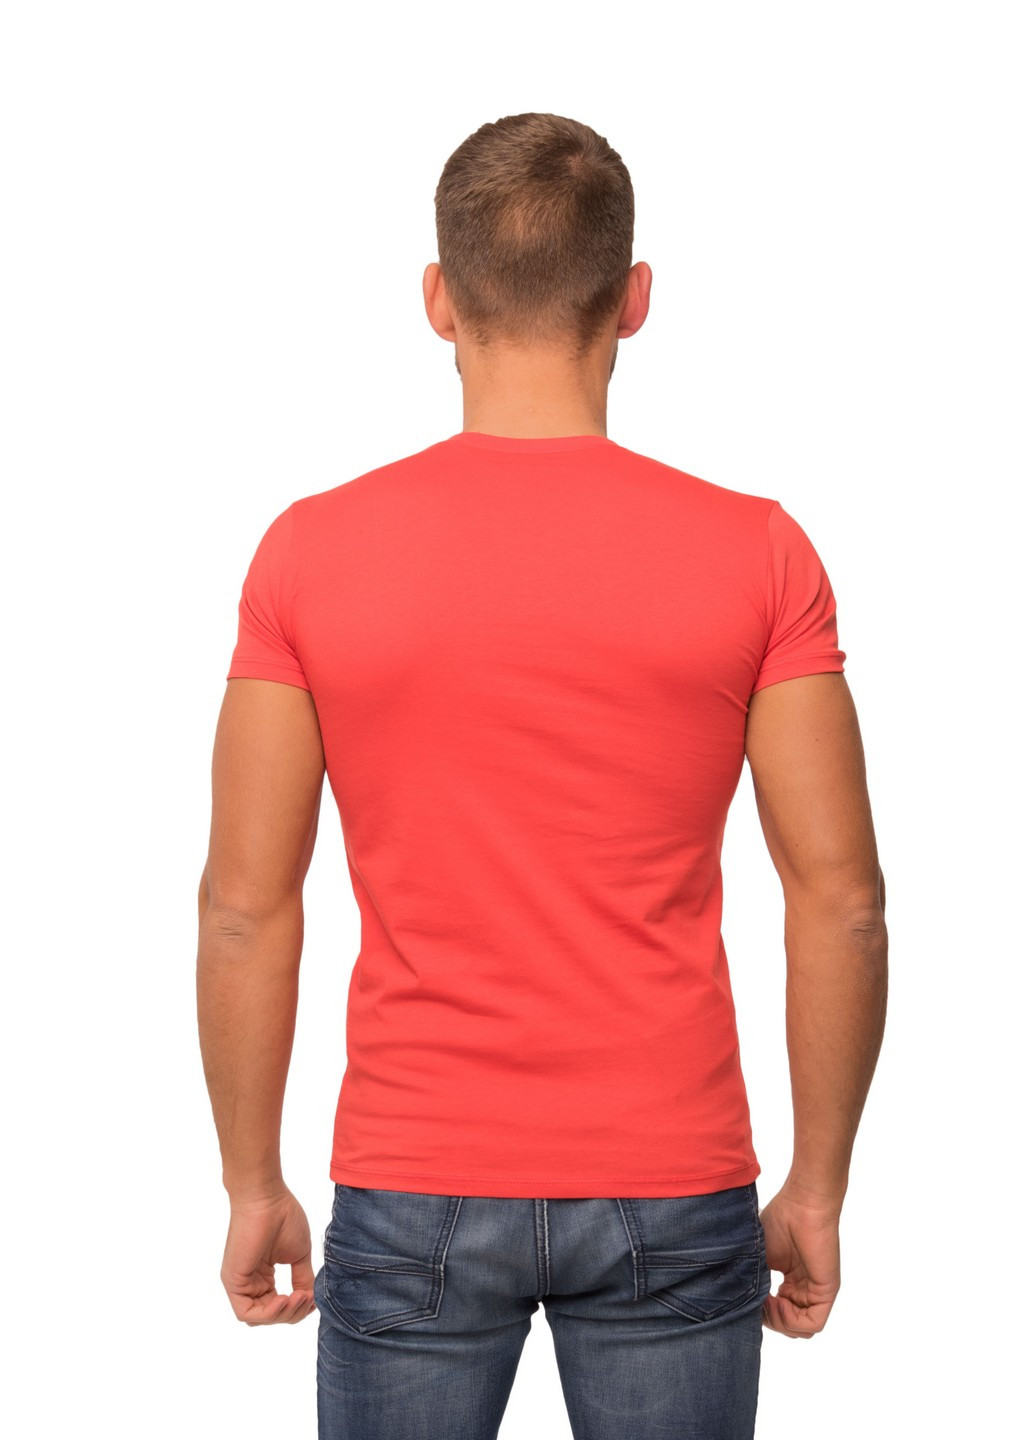 Червона футболка чоловіча Наталюкс 12-1338